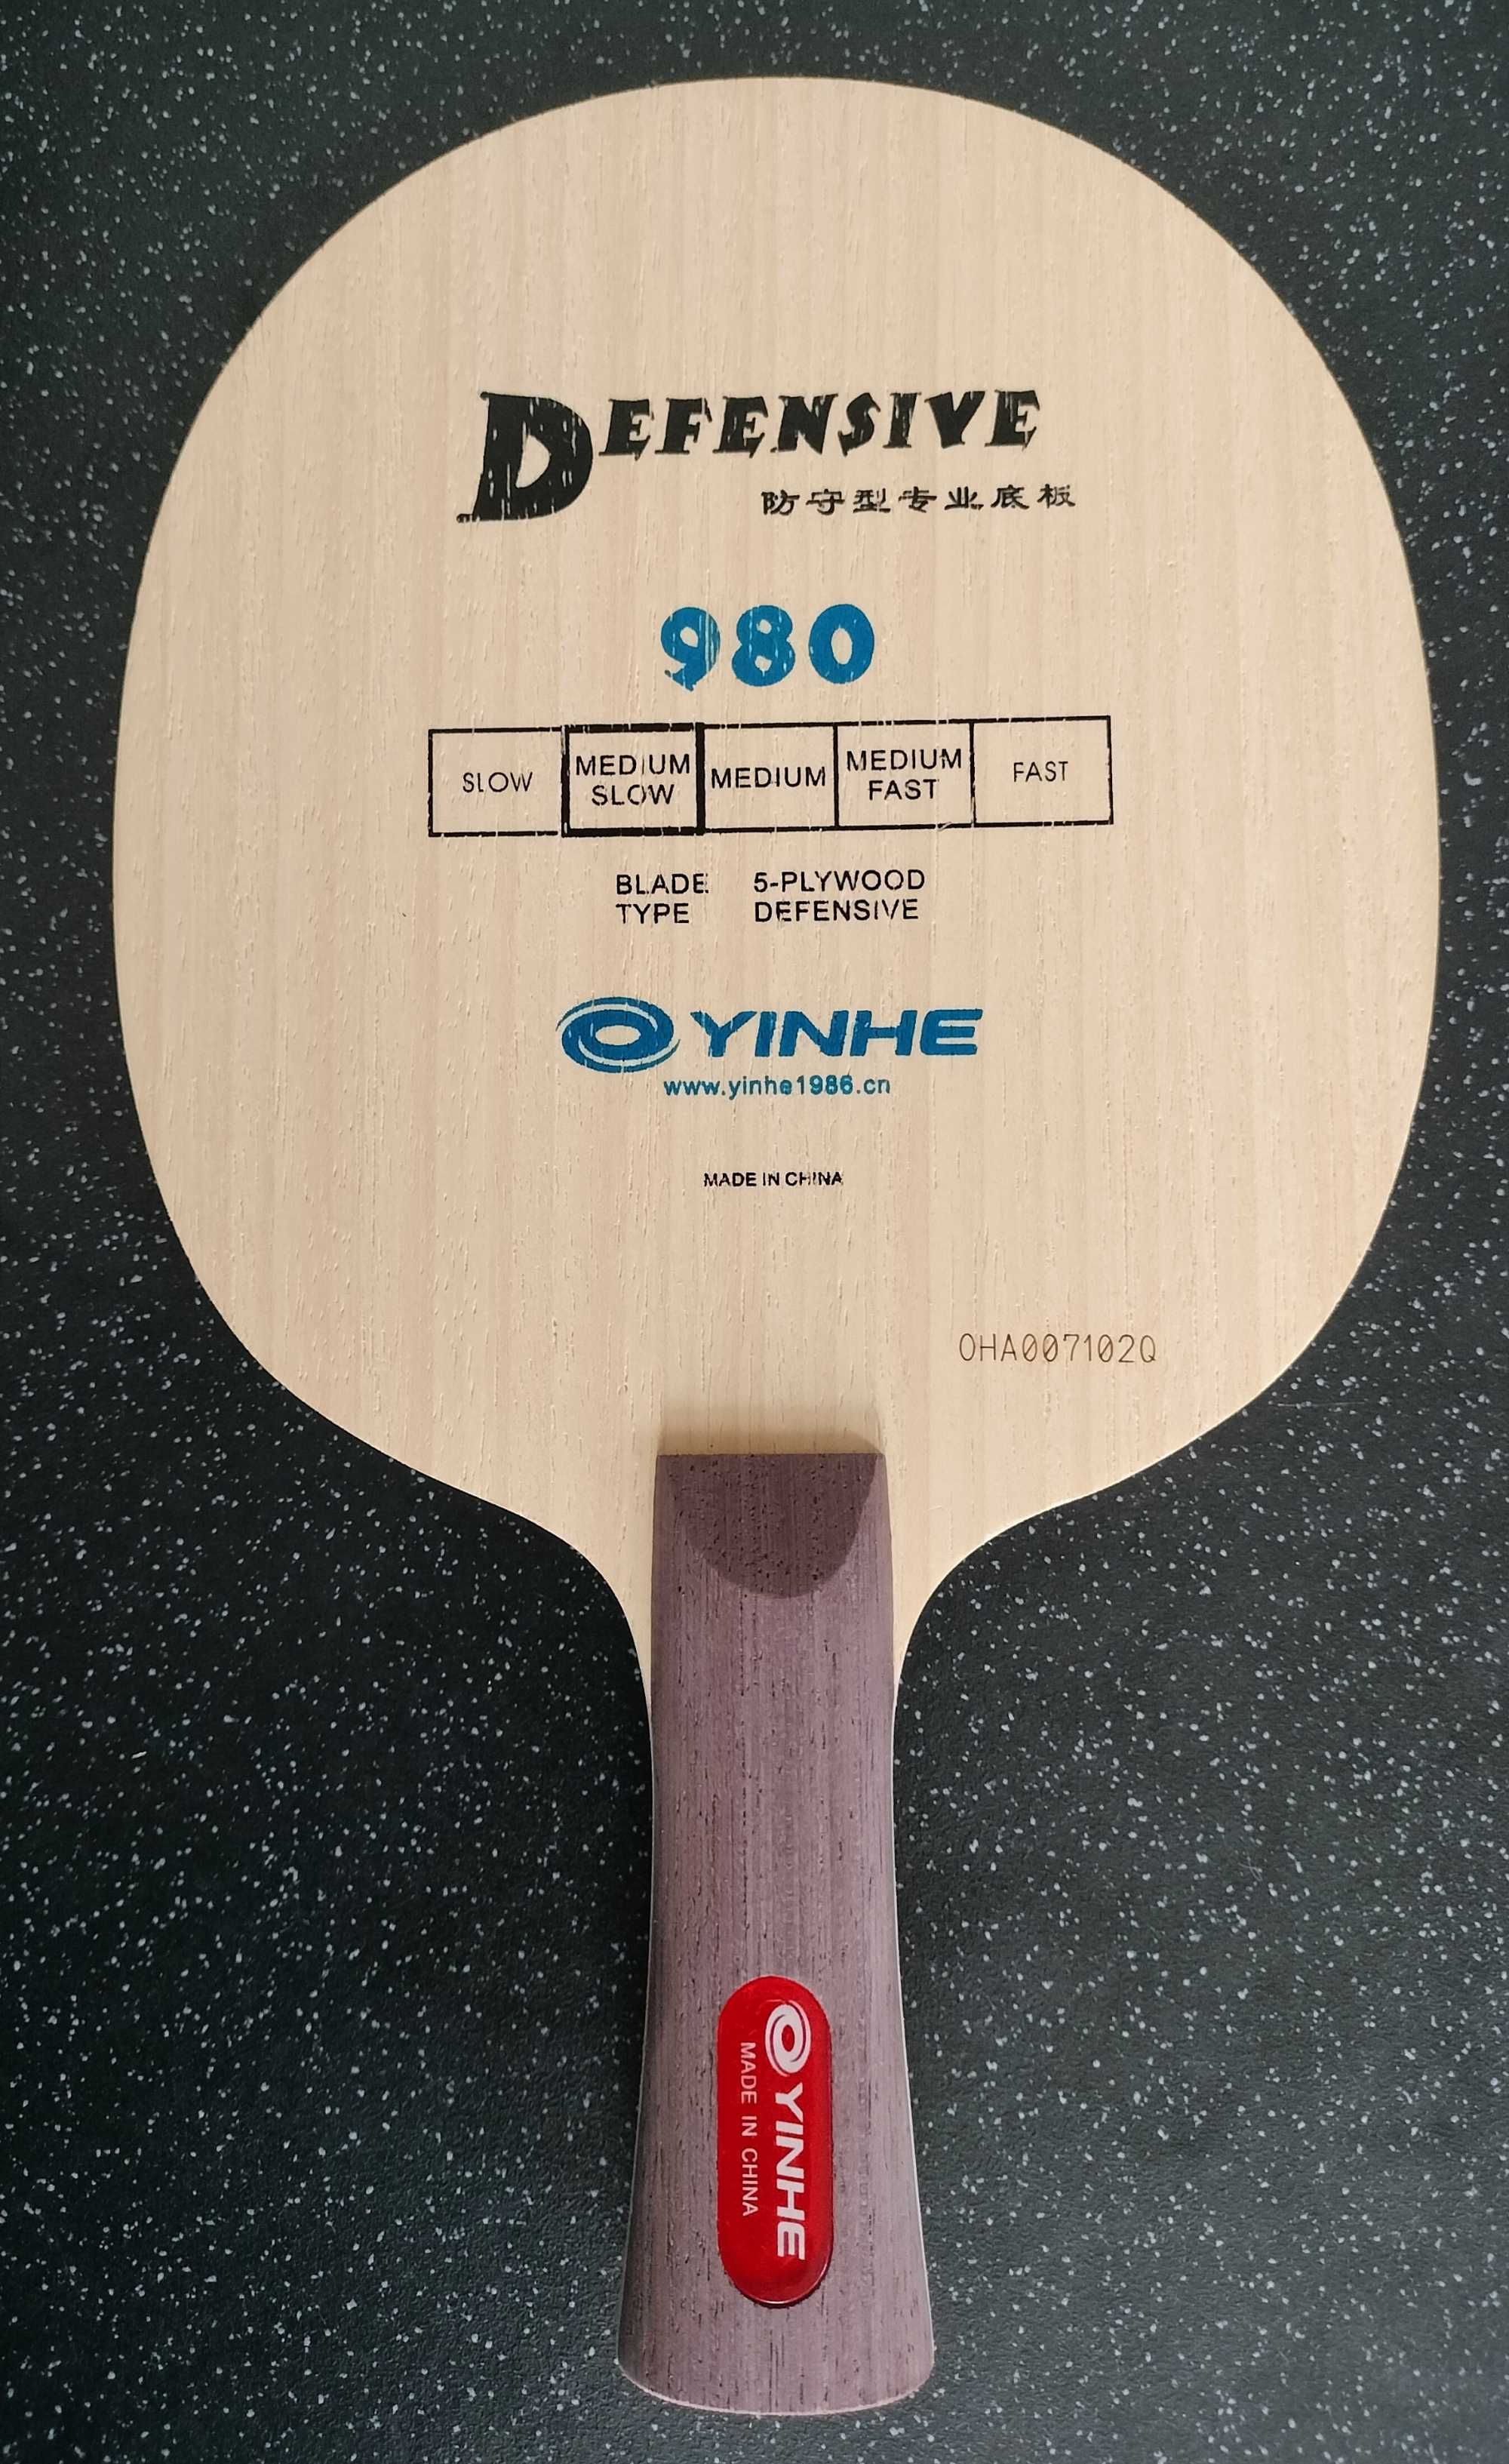 Deska defensywna Yinhe 980 Defensive tenis stołowy